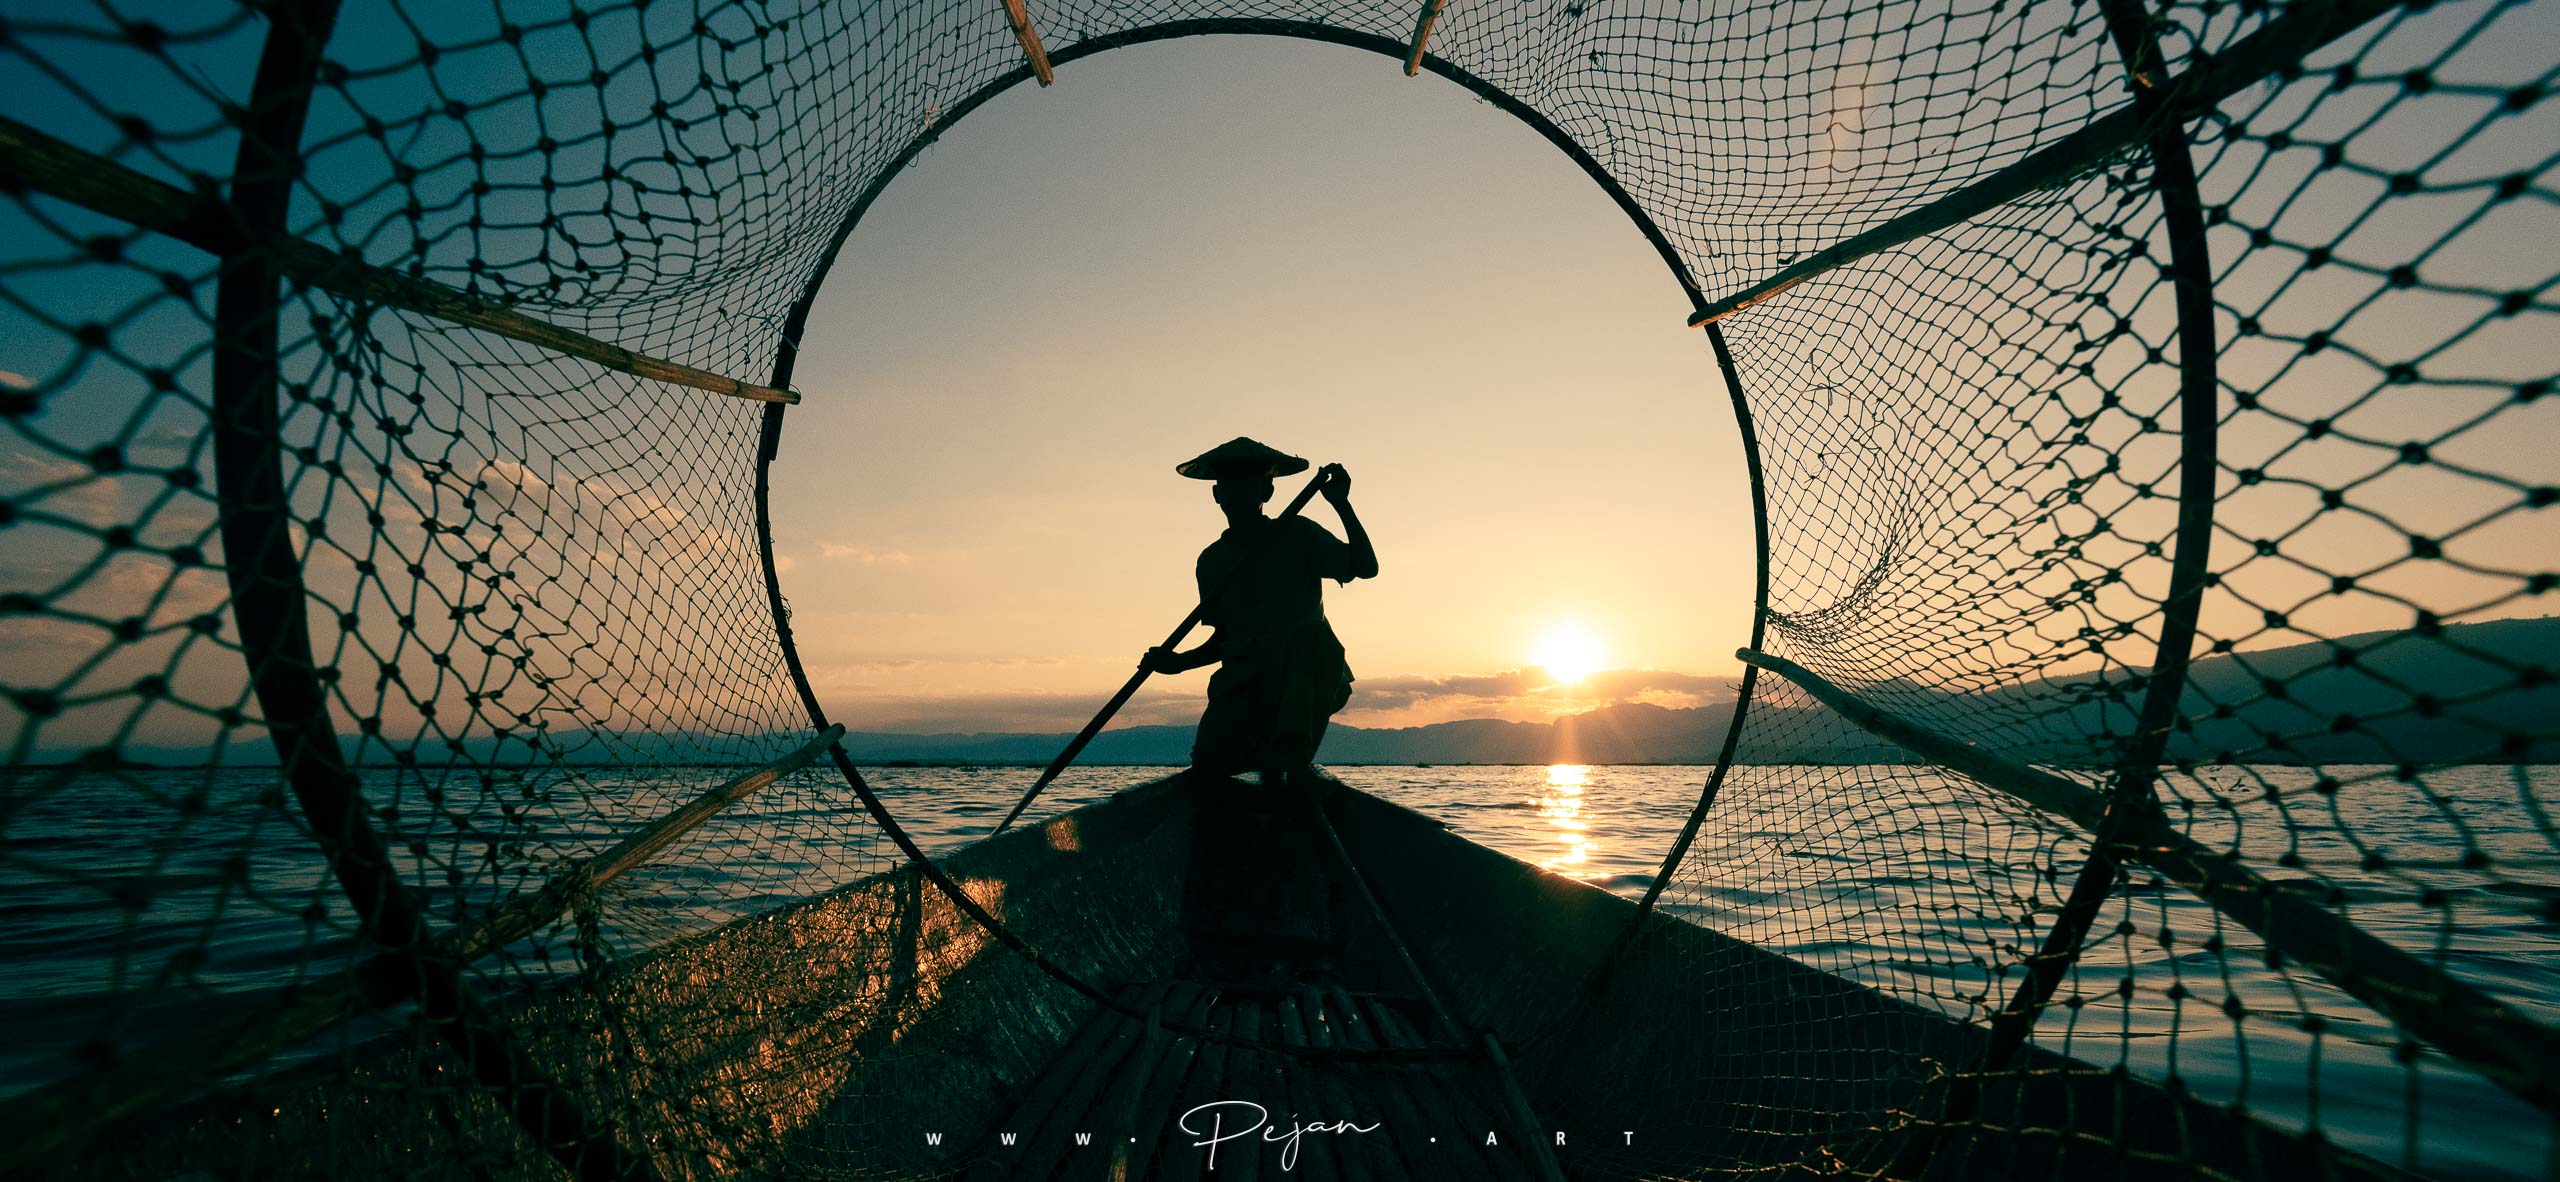 Silhouette d'un pêcheur Intha accroupi sur son bateau au lever du soleil. Photographie iconique prise à travers un filet circulaire, ce qui centre le sujet. Lac Inle, Birmanie.